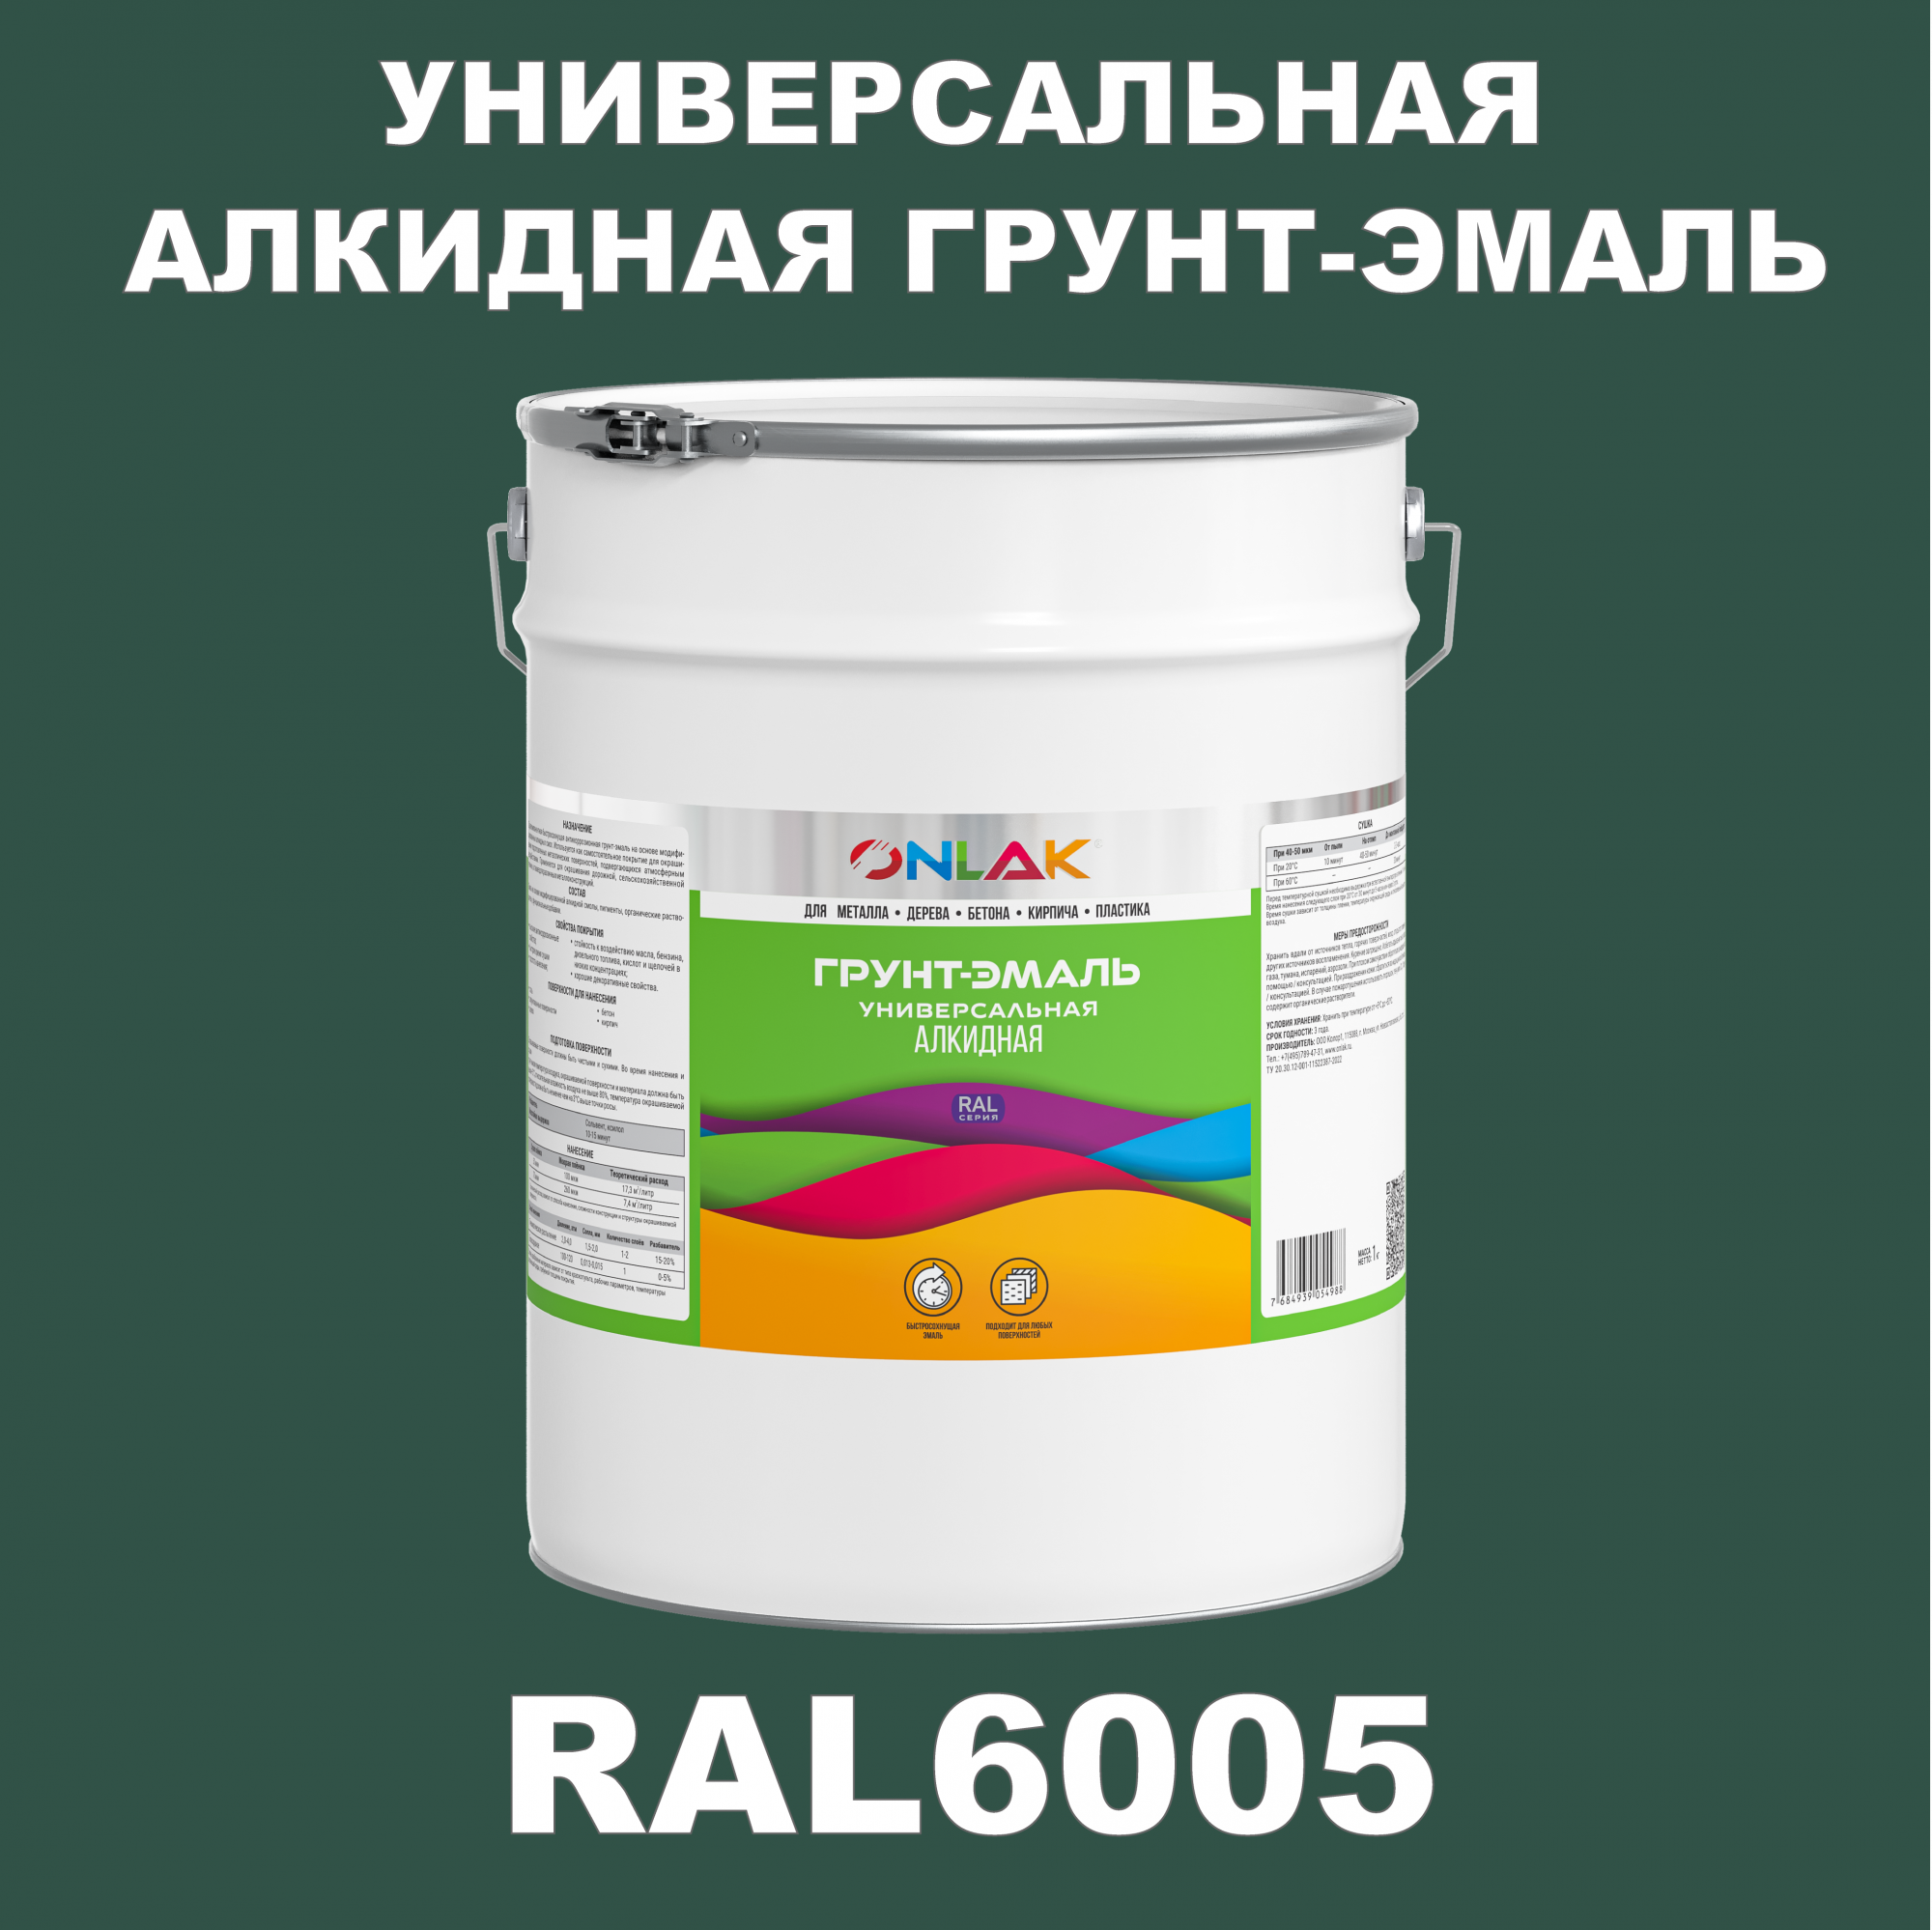 Грунт-эмаль ONLAK 1К RAL6005 антикоррозионная алкидная по металлу по ржавчине 20 кг грунт эмаль neomid по ржавчине быстросохнущая алкидная серая 0 9 кг